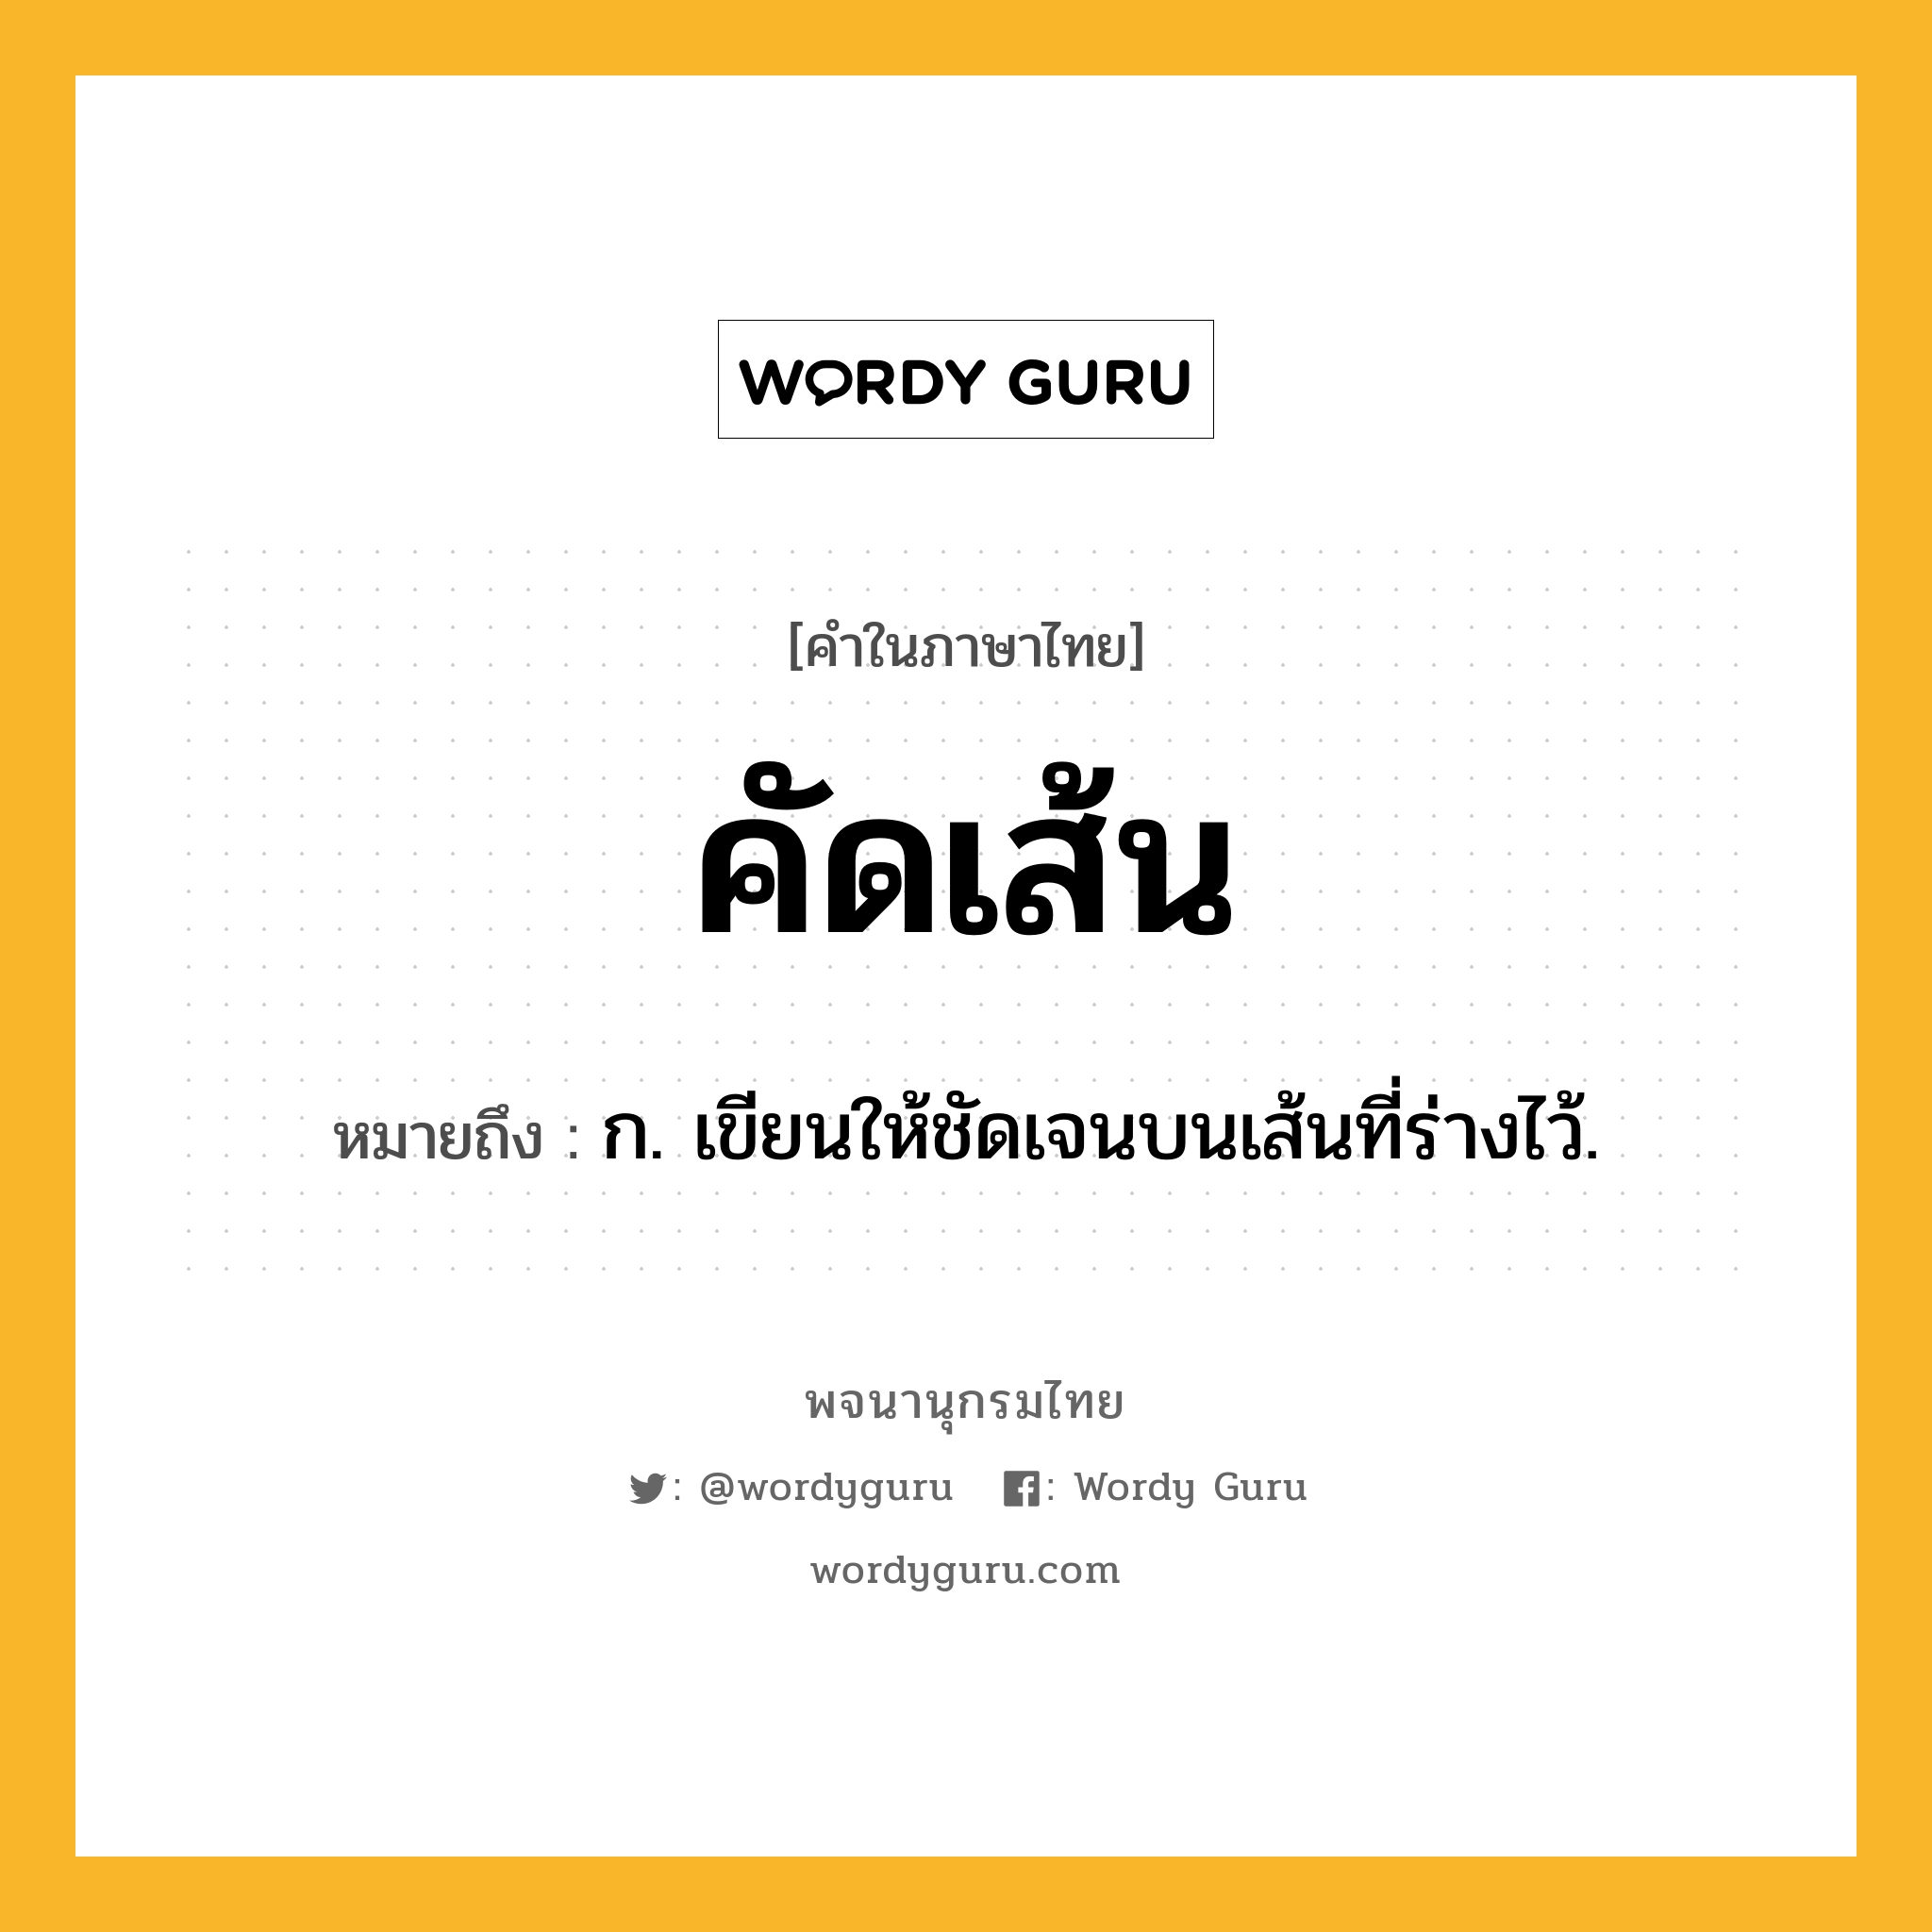 คัดเส้น ความหมาย หมายถึงอะไร?, คำในภาษาไทย คัดเส้น หมายถึง ก. เขียนให้ชัดเจนบนเส้นที่ร่างไว้.